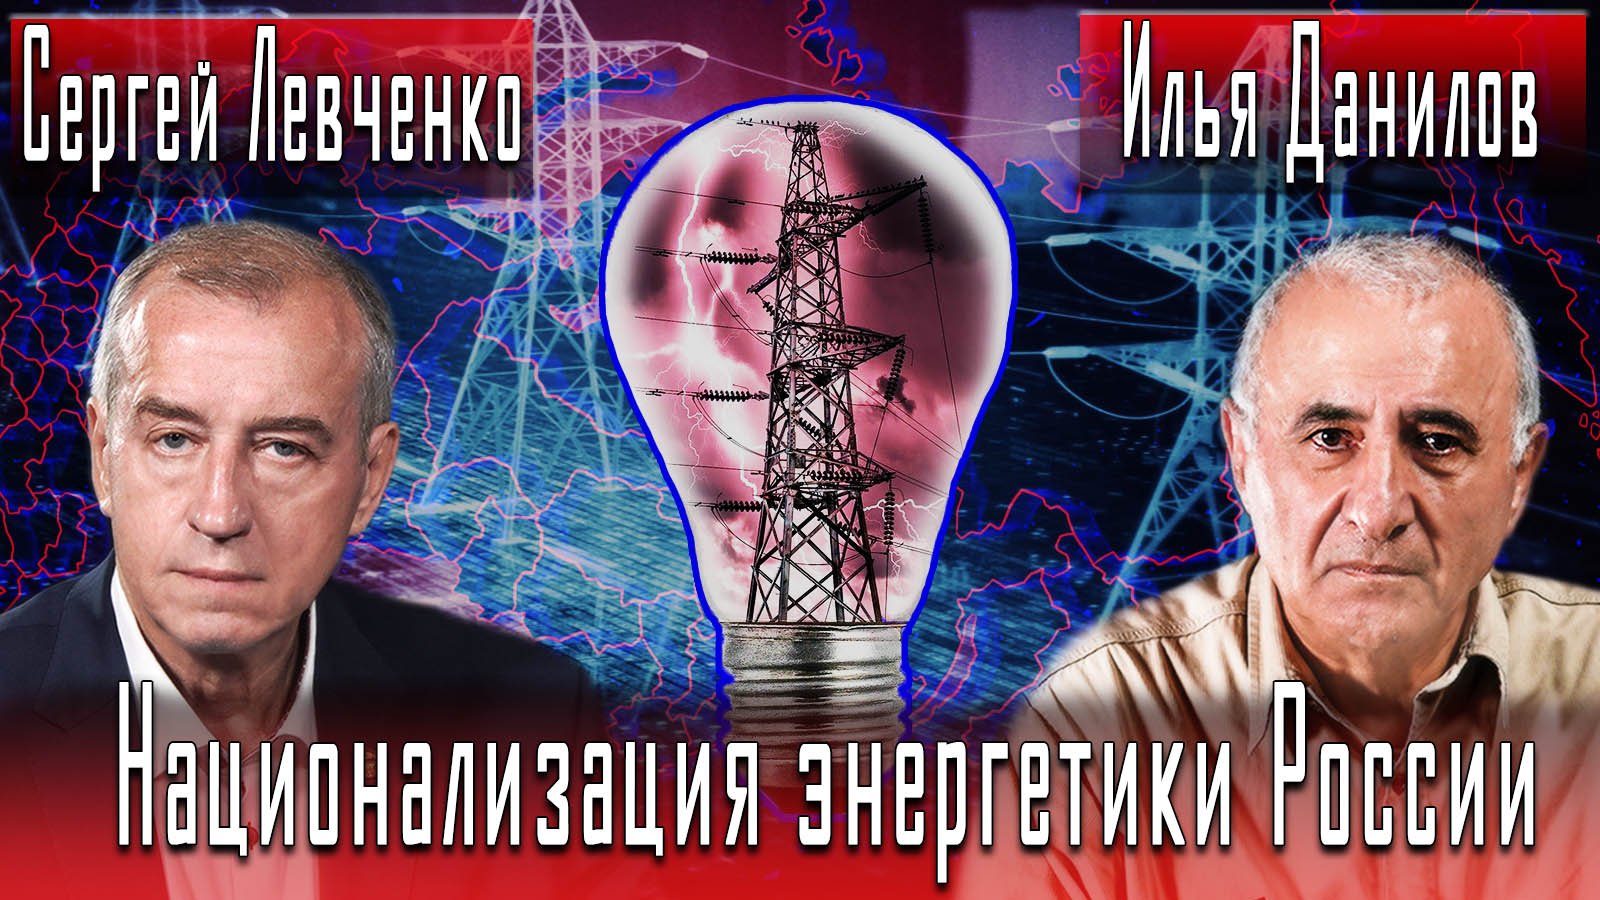 Национализация энергетики России #СергейЛевченко #ИльяДанилов #ИгорьГончаров